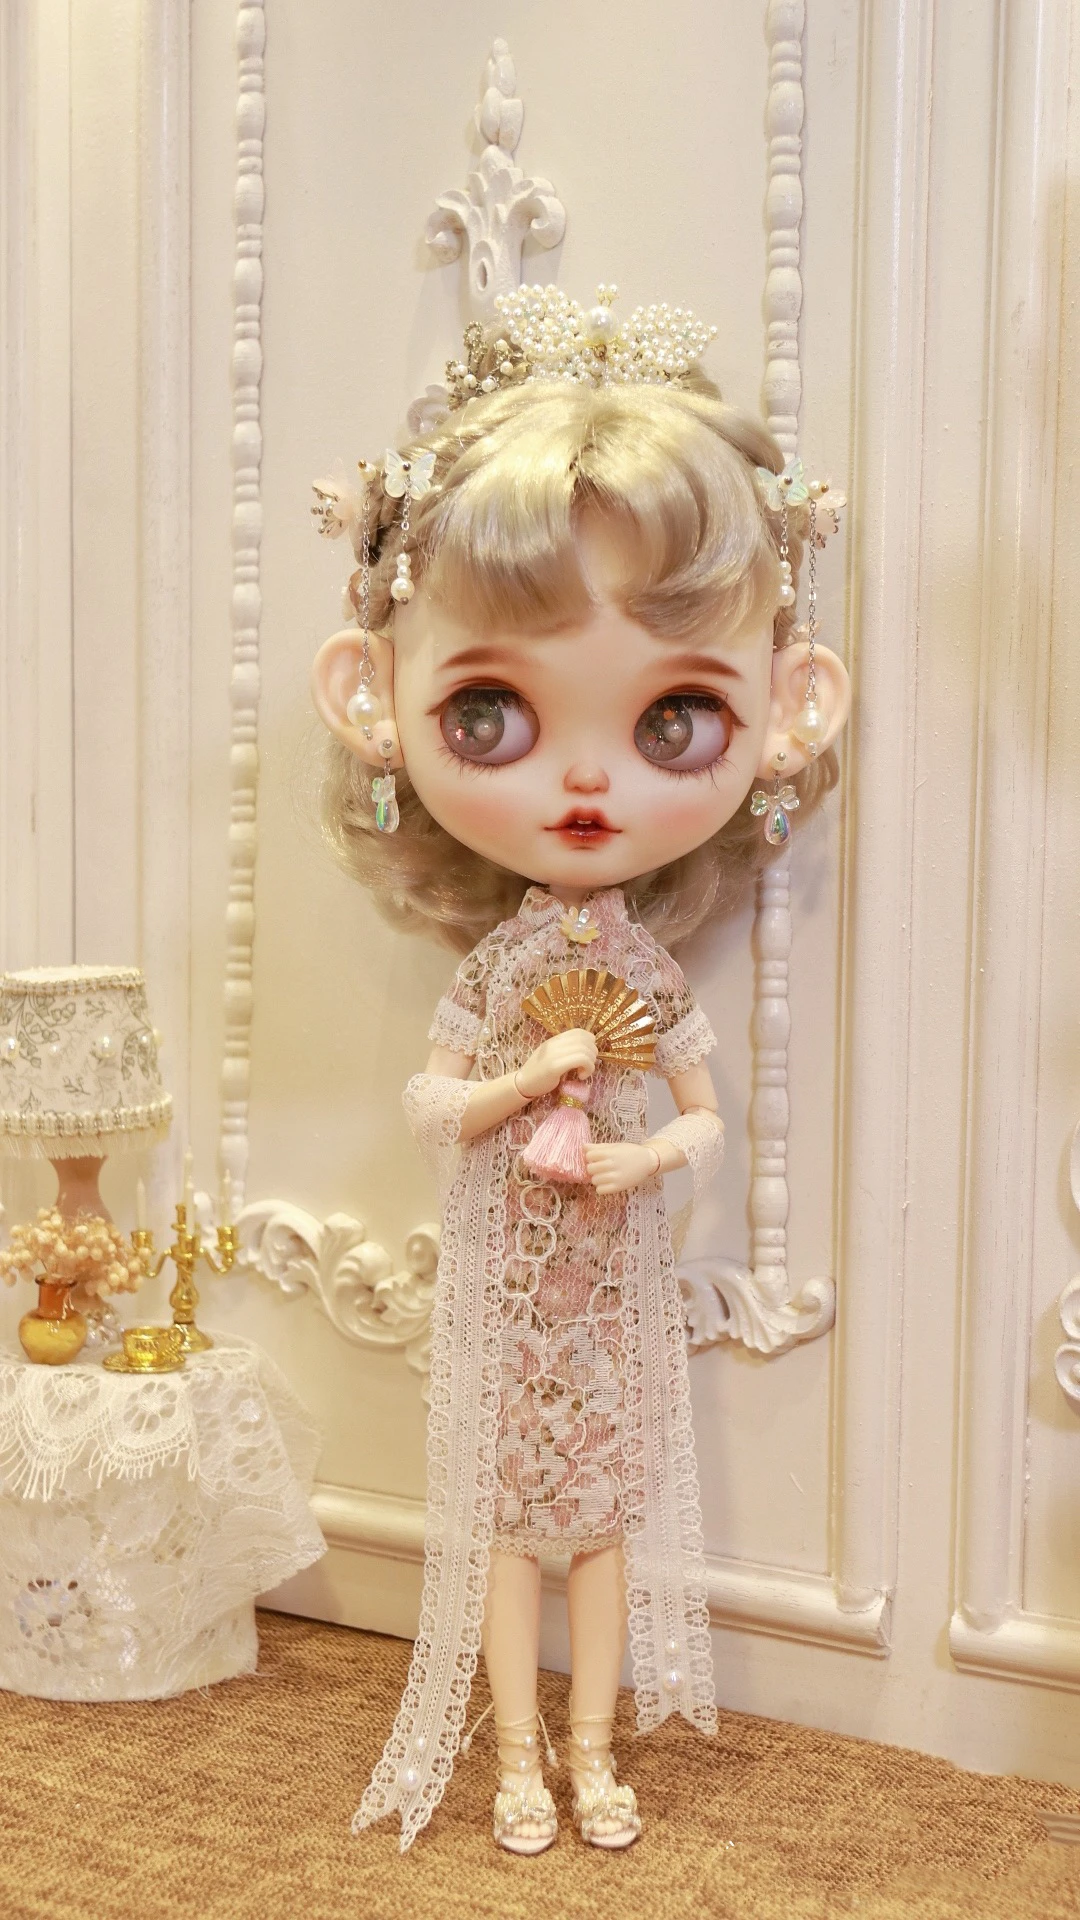 Платье BJD Blythe Одежда Cheongsam золотисто-розовая юбка 1/6 30 см для кукол (подходит для Pullip, Ob24, ob22, Licca)